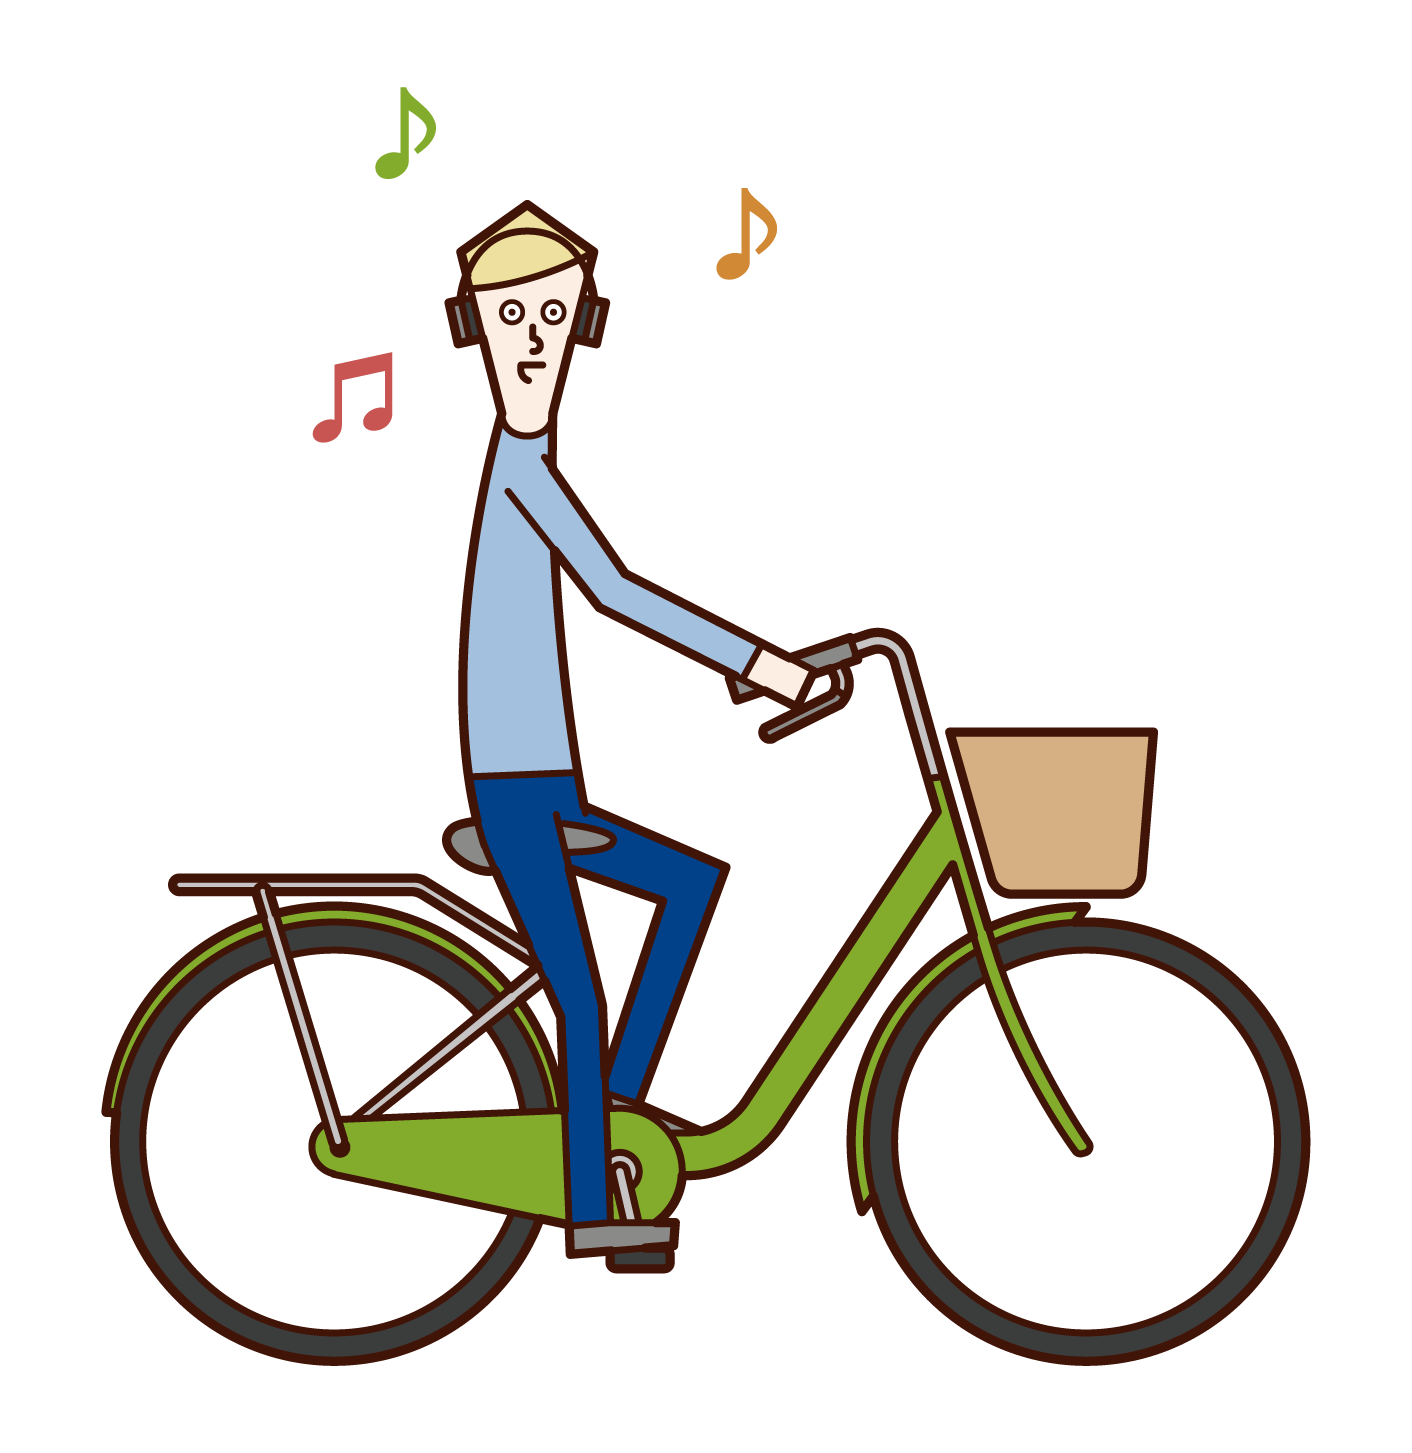 헤드폰으로 음악을 들을 때 자전거를 운전하는 사람(남성)의 일러스트